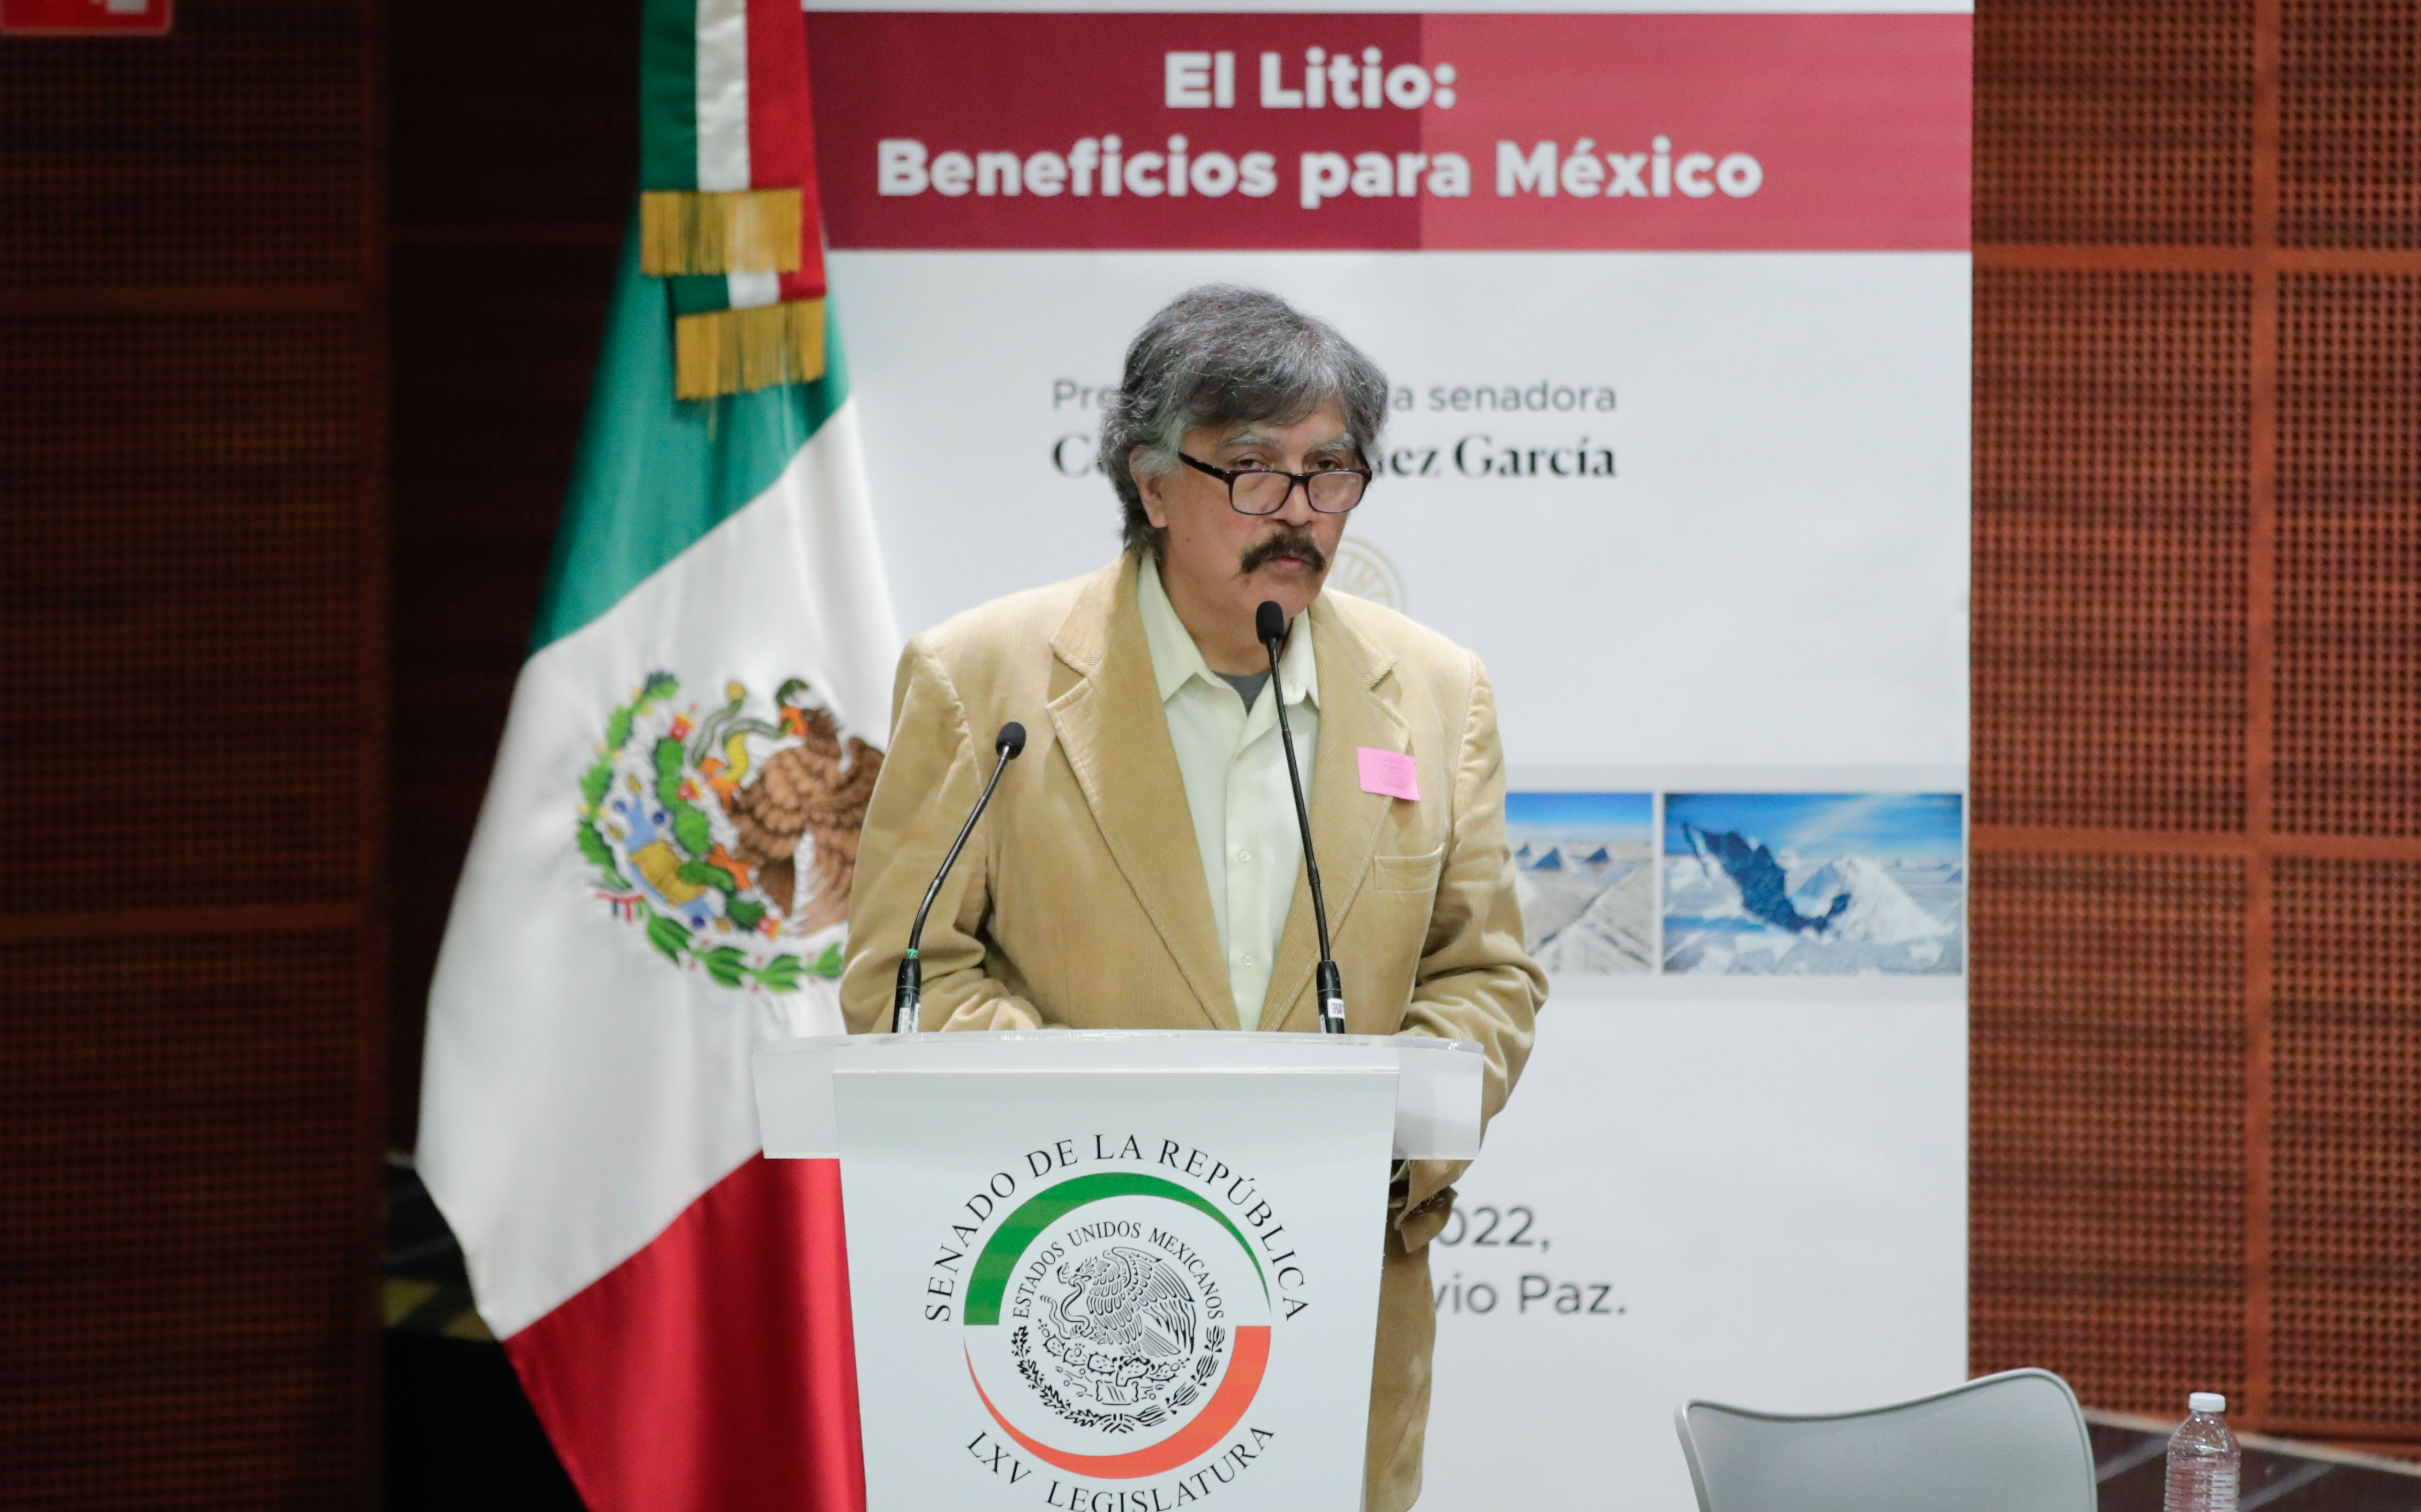 Foro El Litio Beneficios para Mexico-